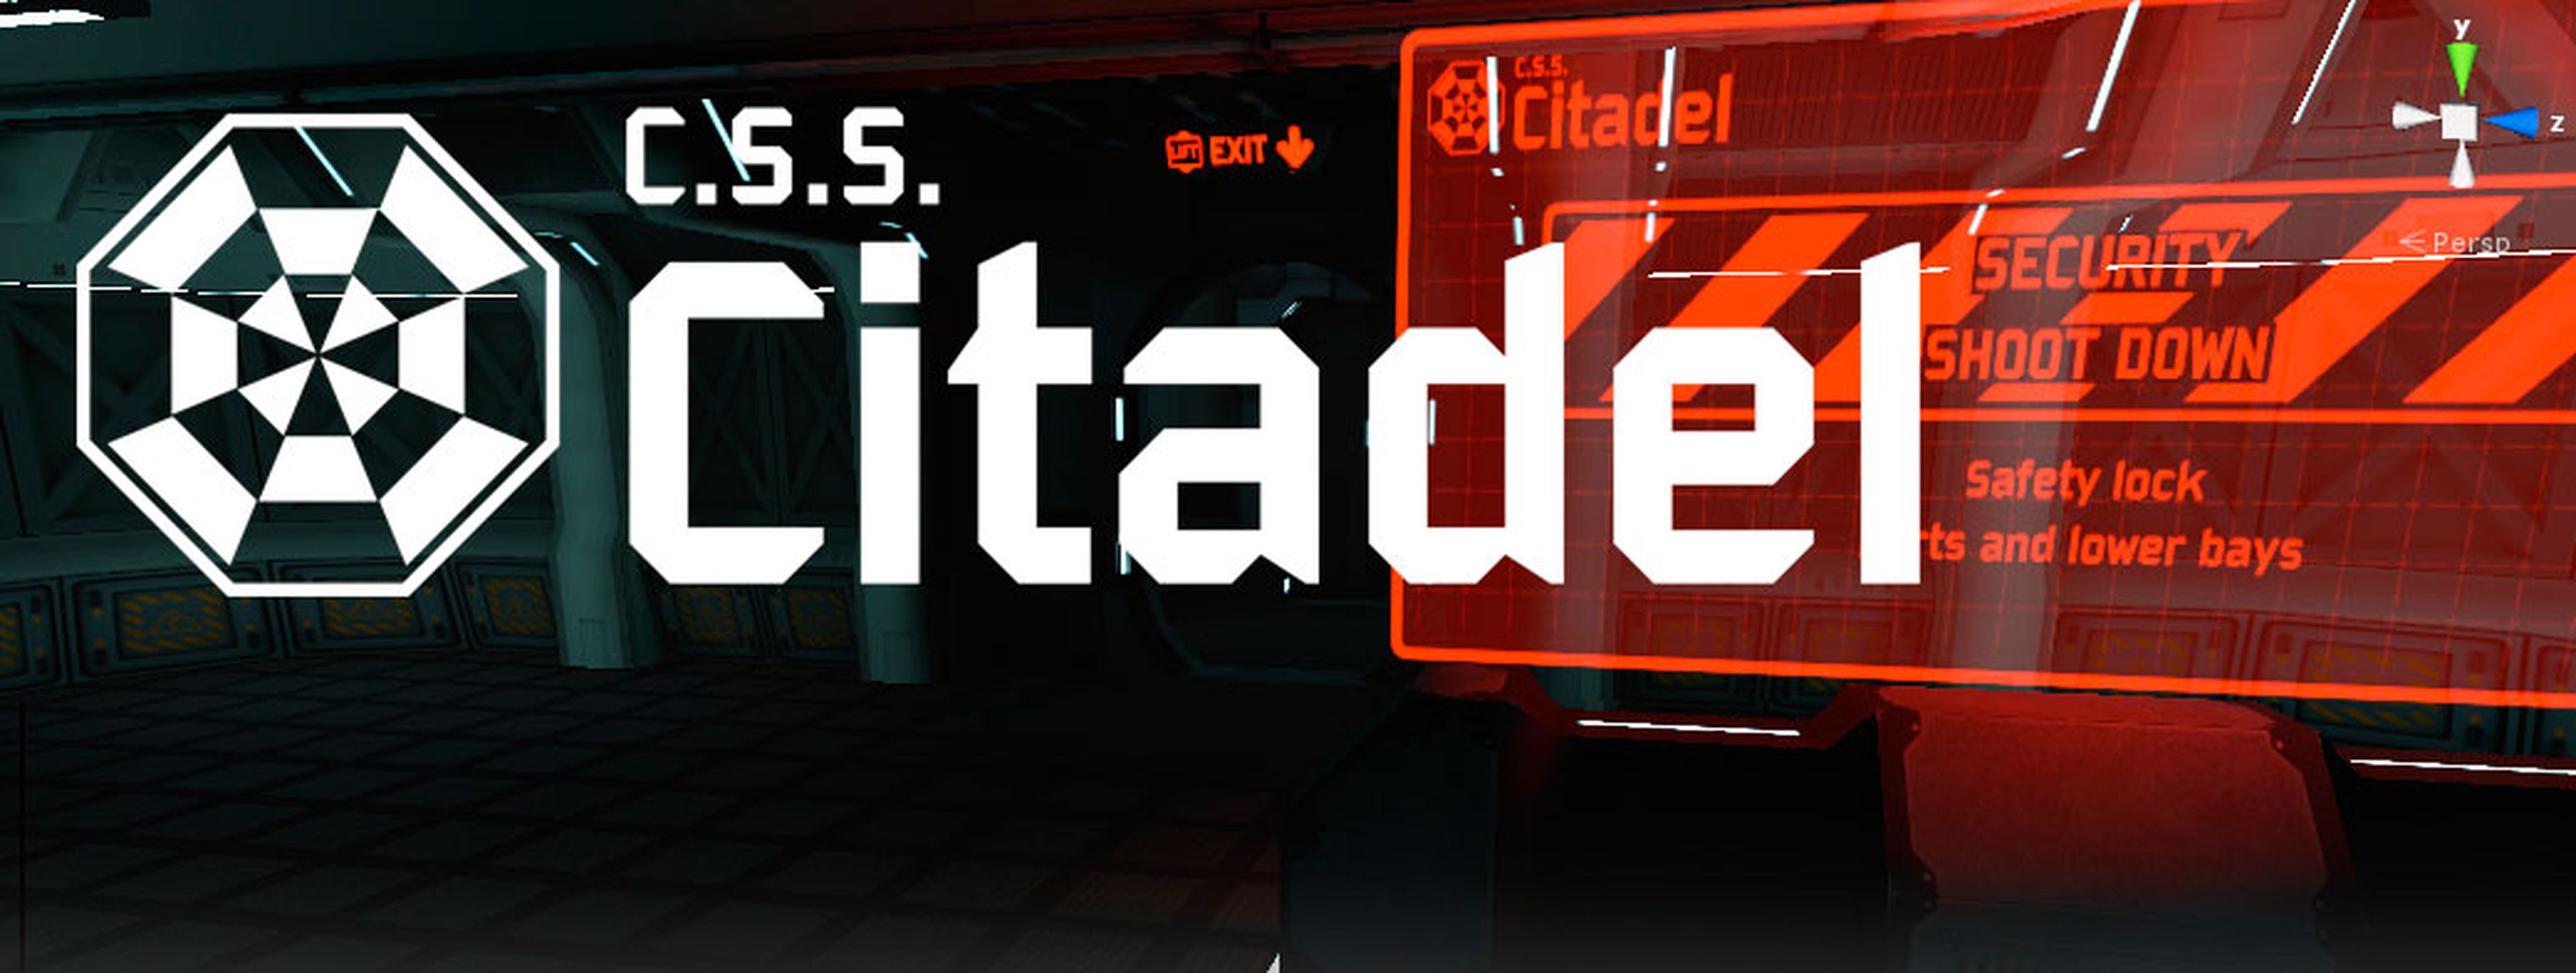 Citadel VR